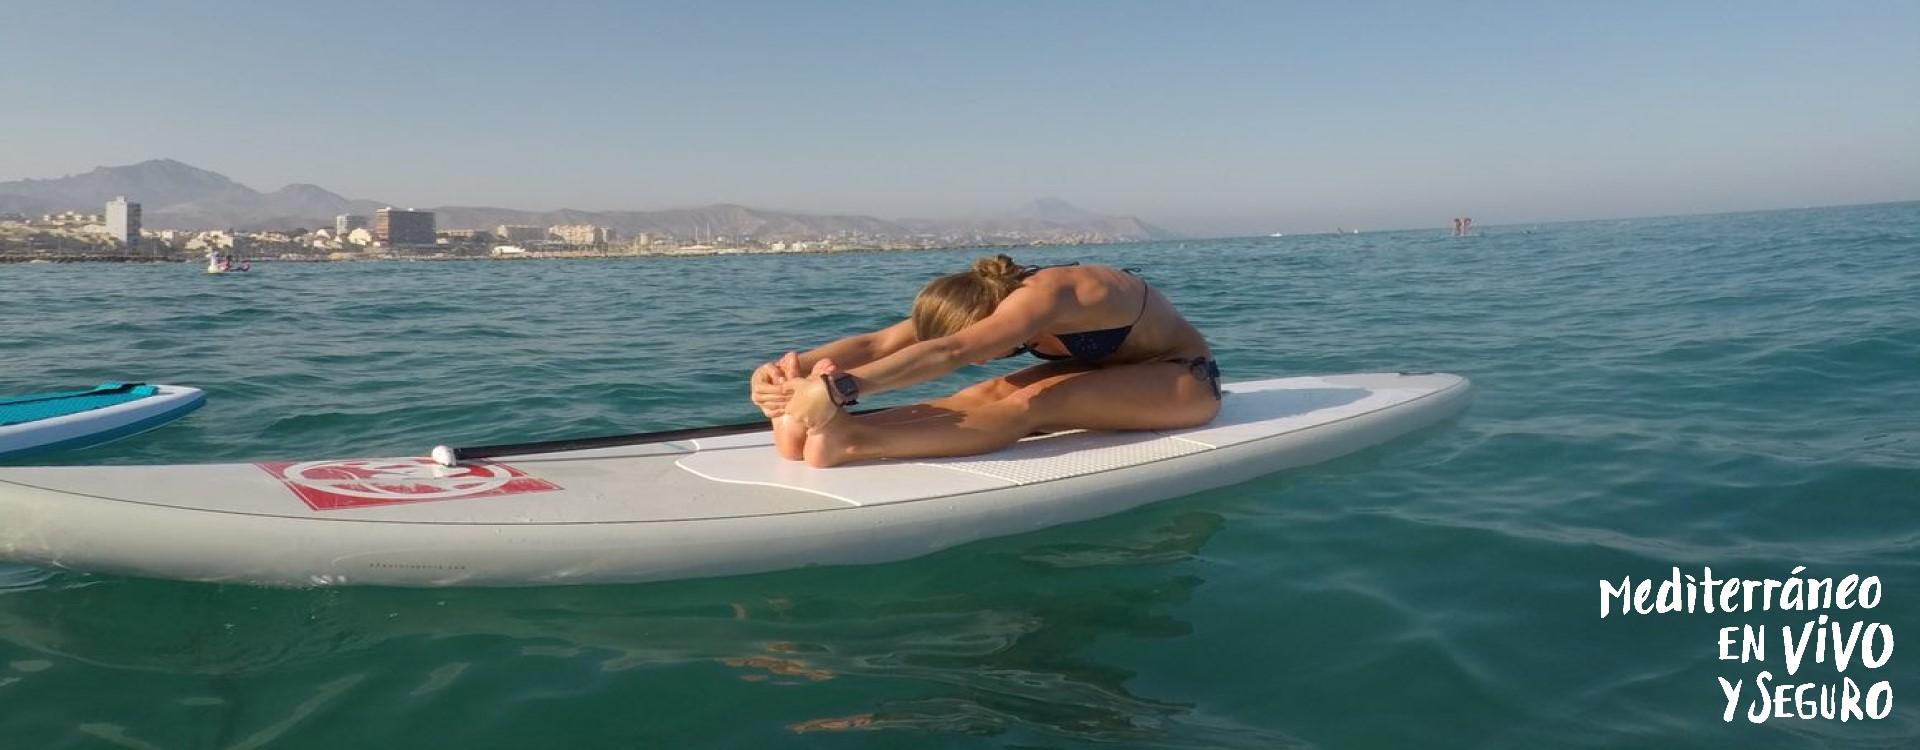 Imagen de una joven realizando paddle surf en Campello 